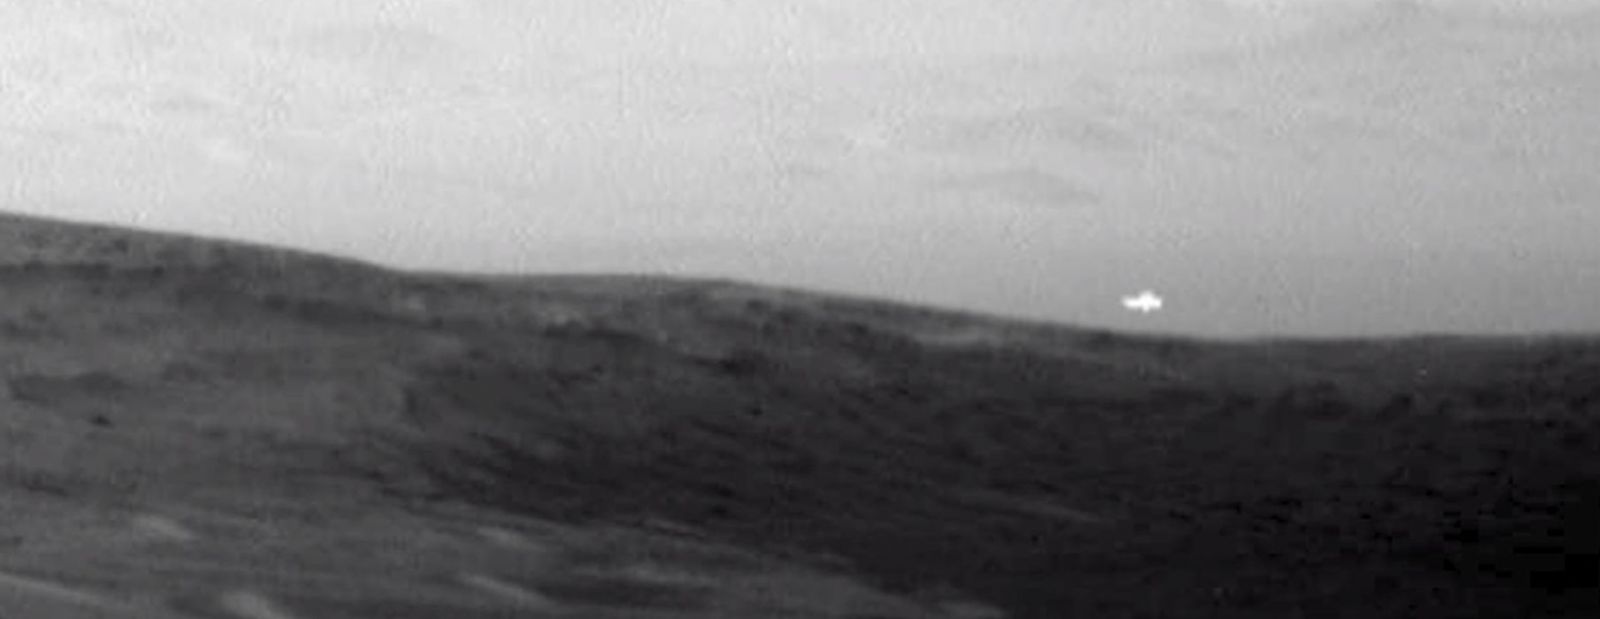 Na Marse sa zjavila jasná biela žiara. Podľa konšpirátorov ide o UFO, NASA nemá presné vysvetlenie